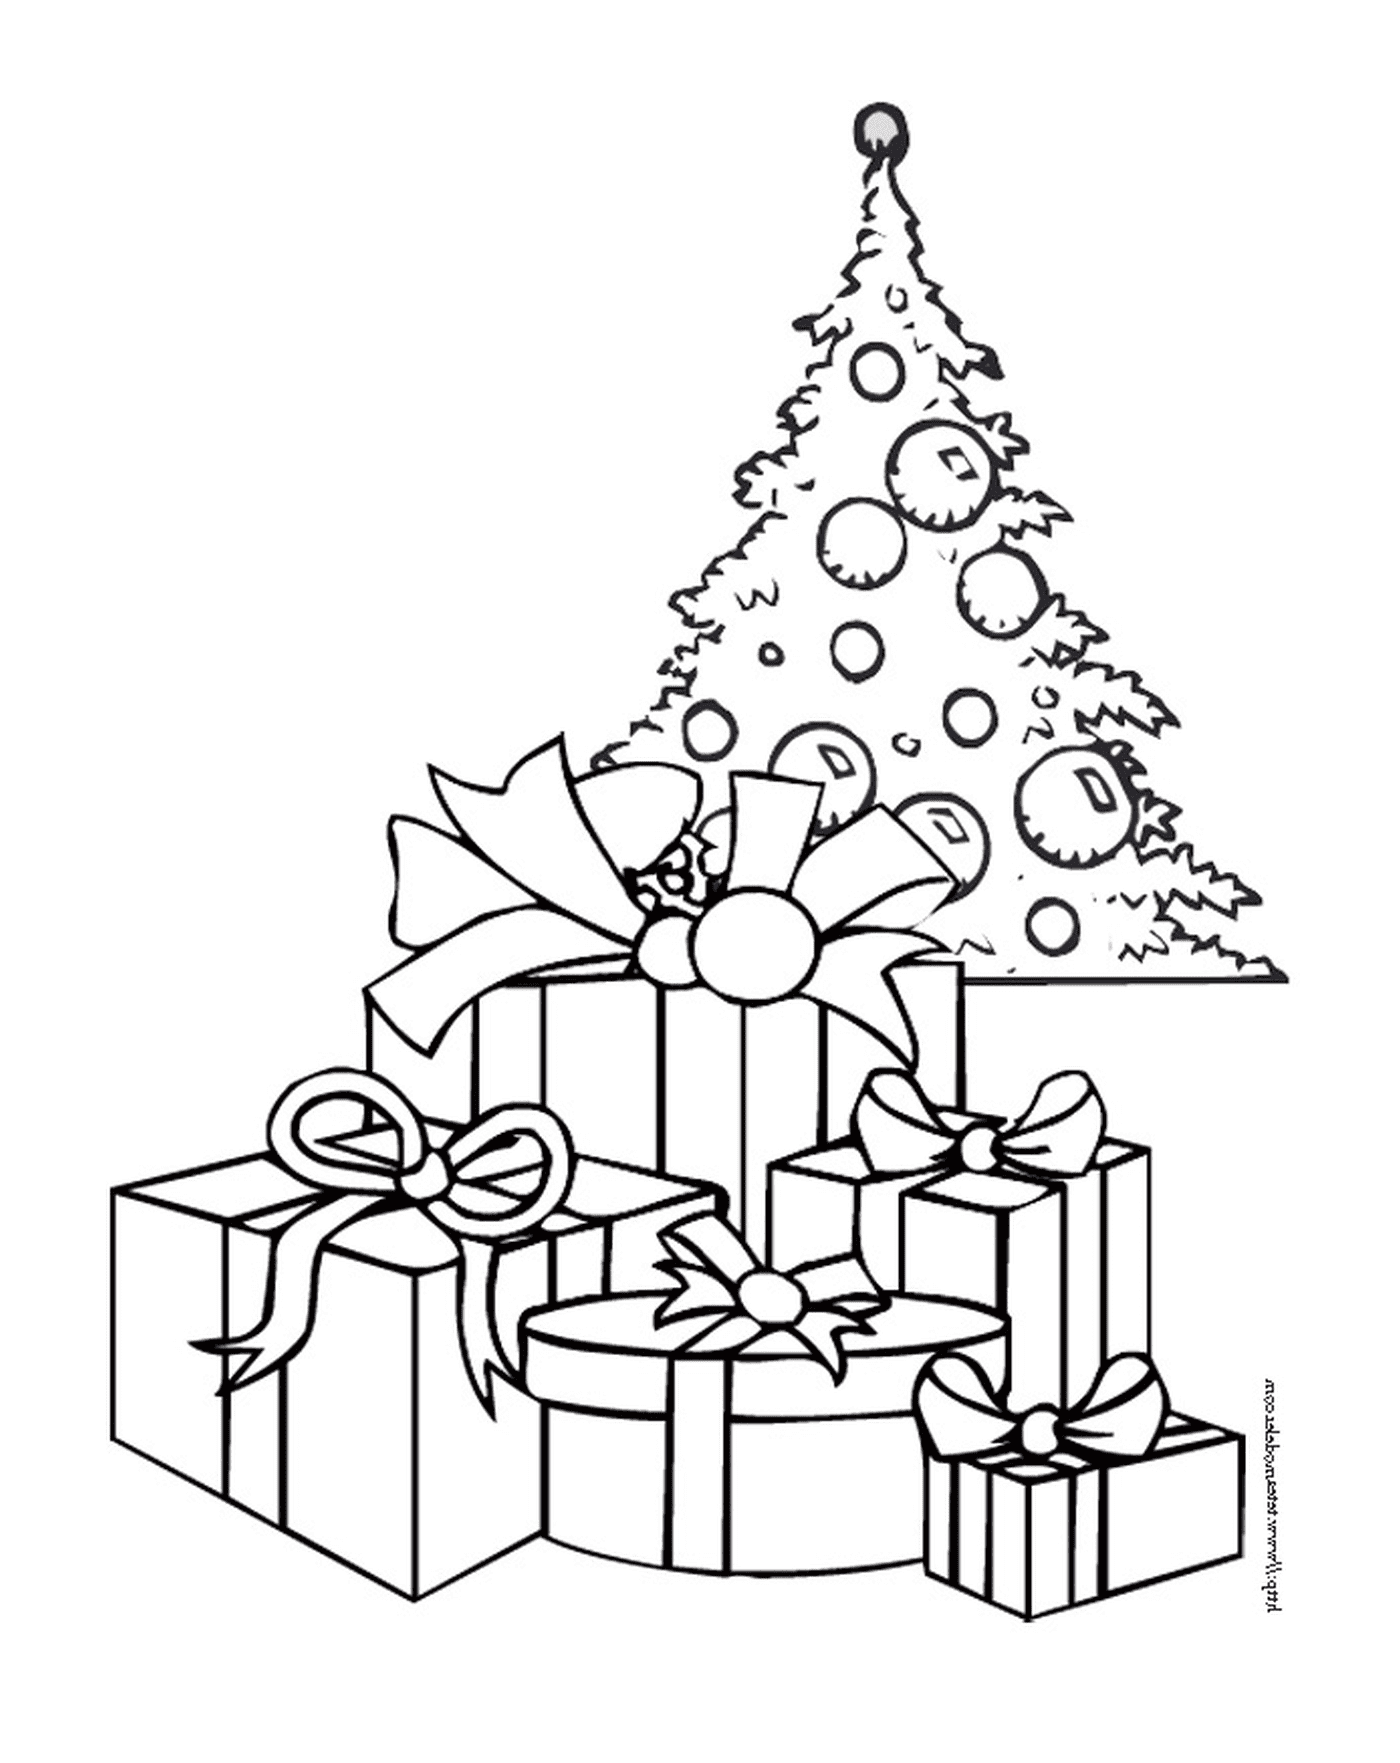  एक क्रिसमस का पेड़ जिसमें तोहफे ऊपर दिए गए हैं 